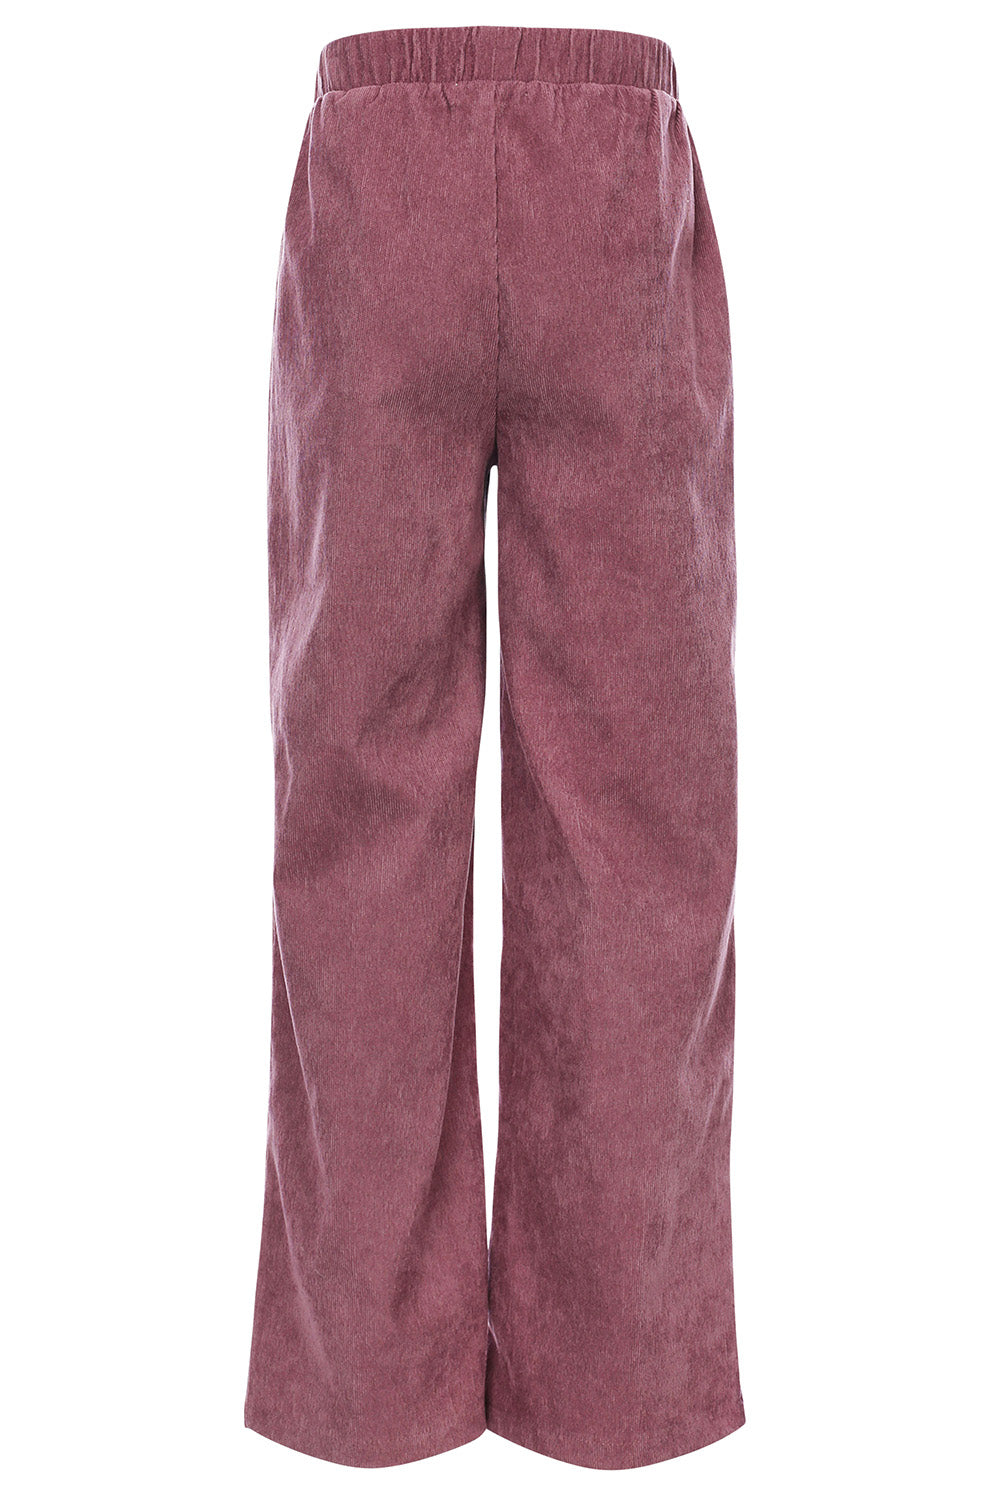 Meisjes Corduroy Wideleg Pants van LOOXS Little in de kleur Mauve Blush in maat 128.